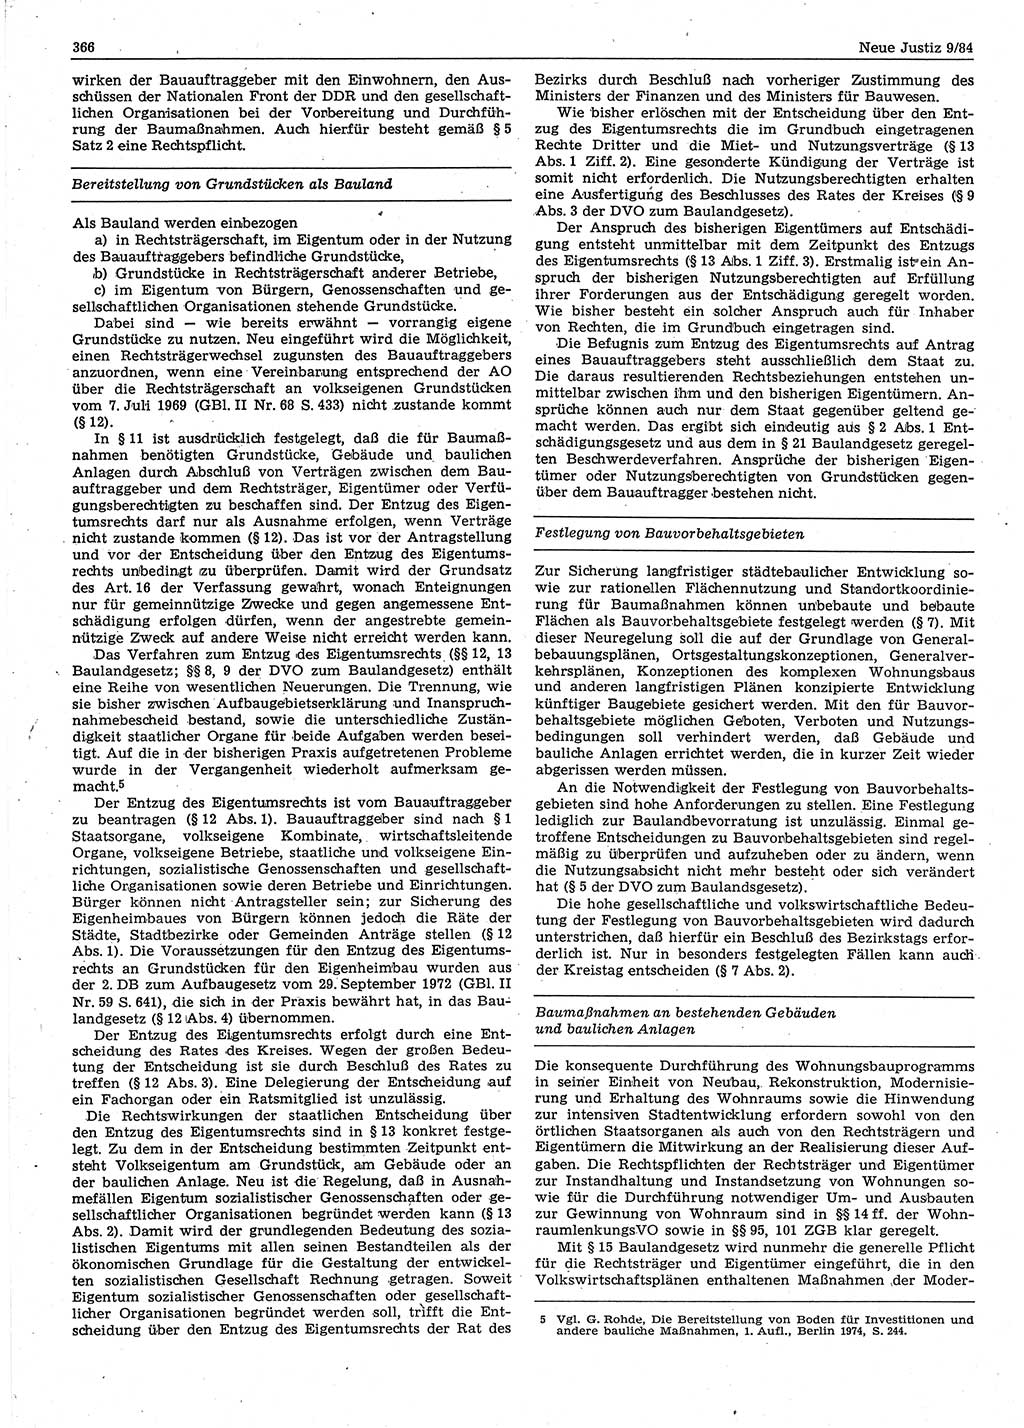 Neue Justiz (NJ), Zeitschrift für sozialistisches Recht und Gesetzlichkeit [Deutsche Demokratische Republik (DDR)], 38. Jahrgang 1984, Seite 366 (NJ DDR 1984, S. 366)